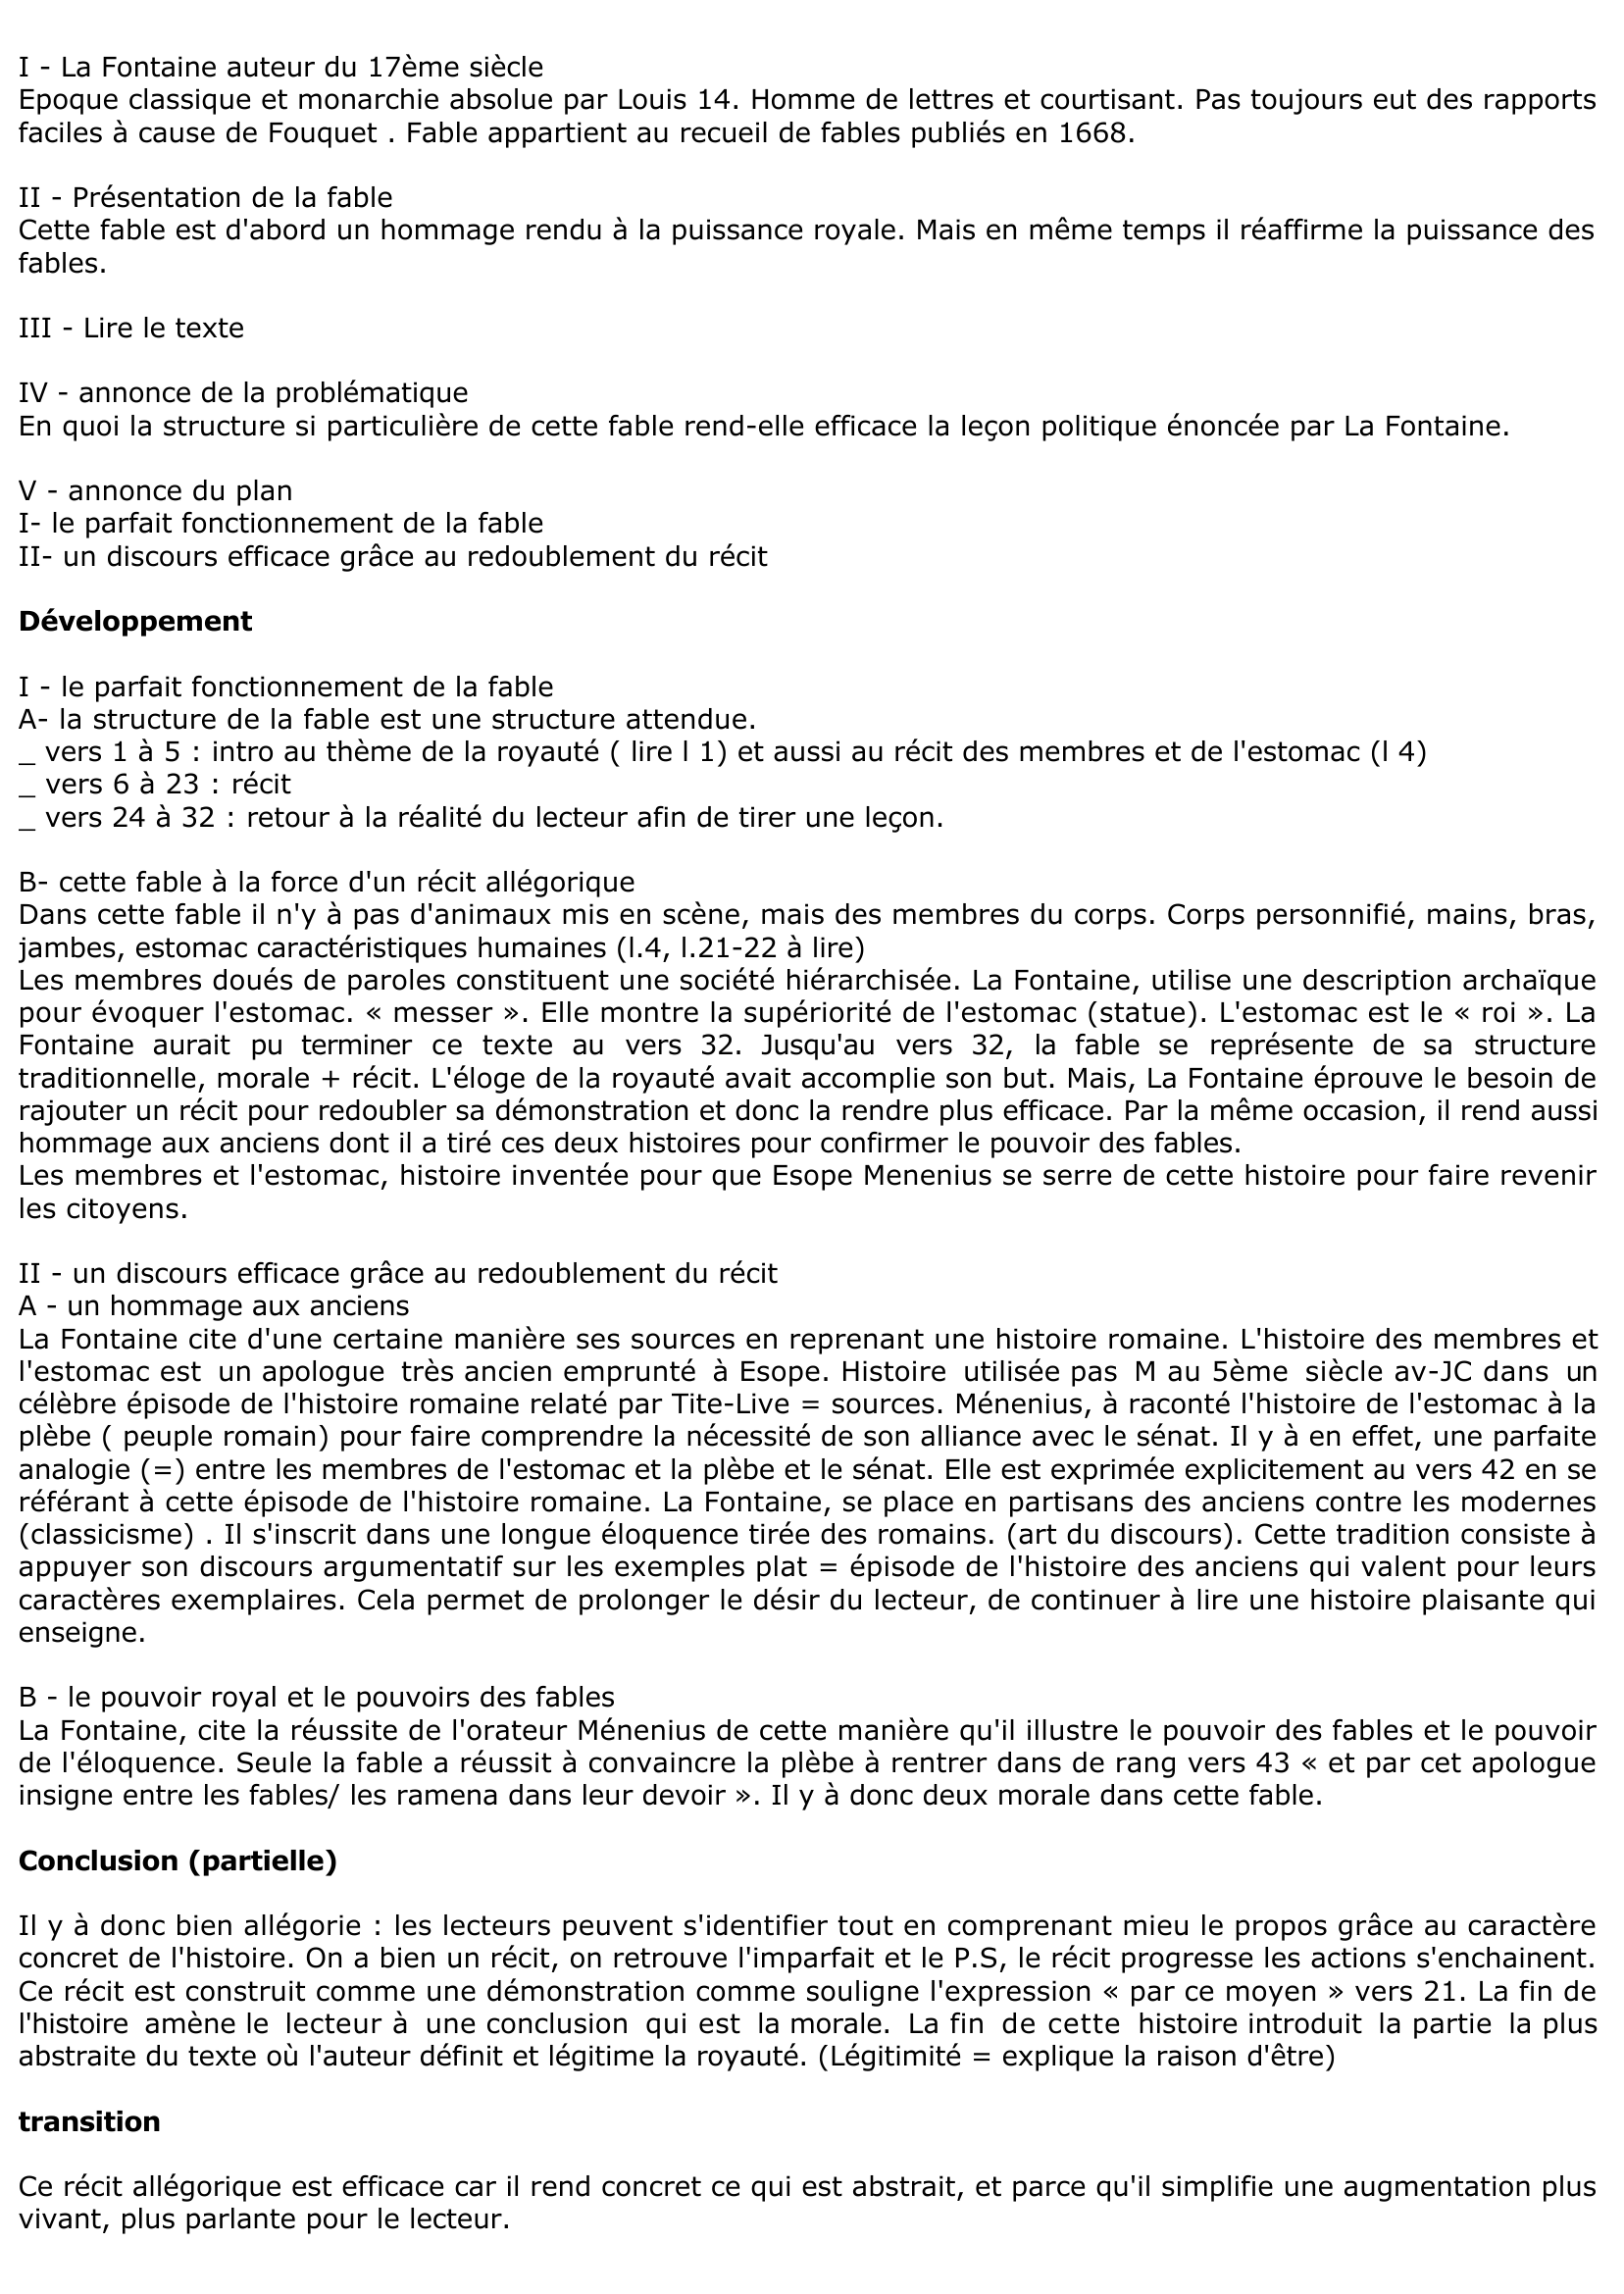 Prévisualisation du document Les Membres et l'Estomac - La Fontaine (lecture analytique)